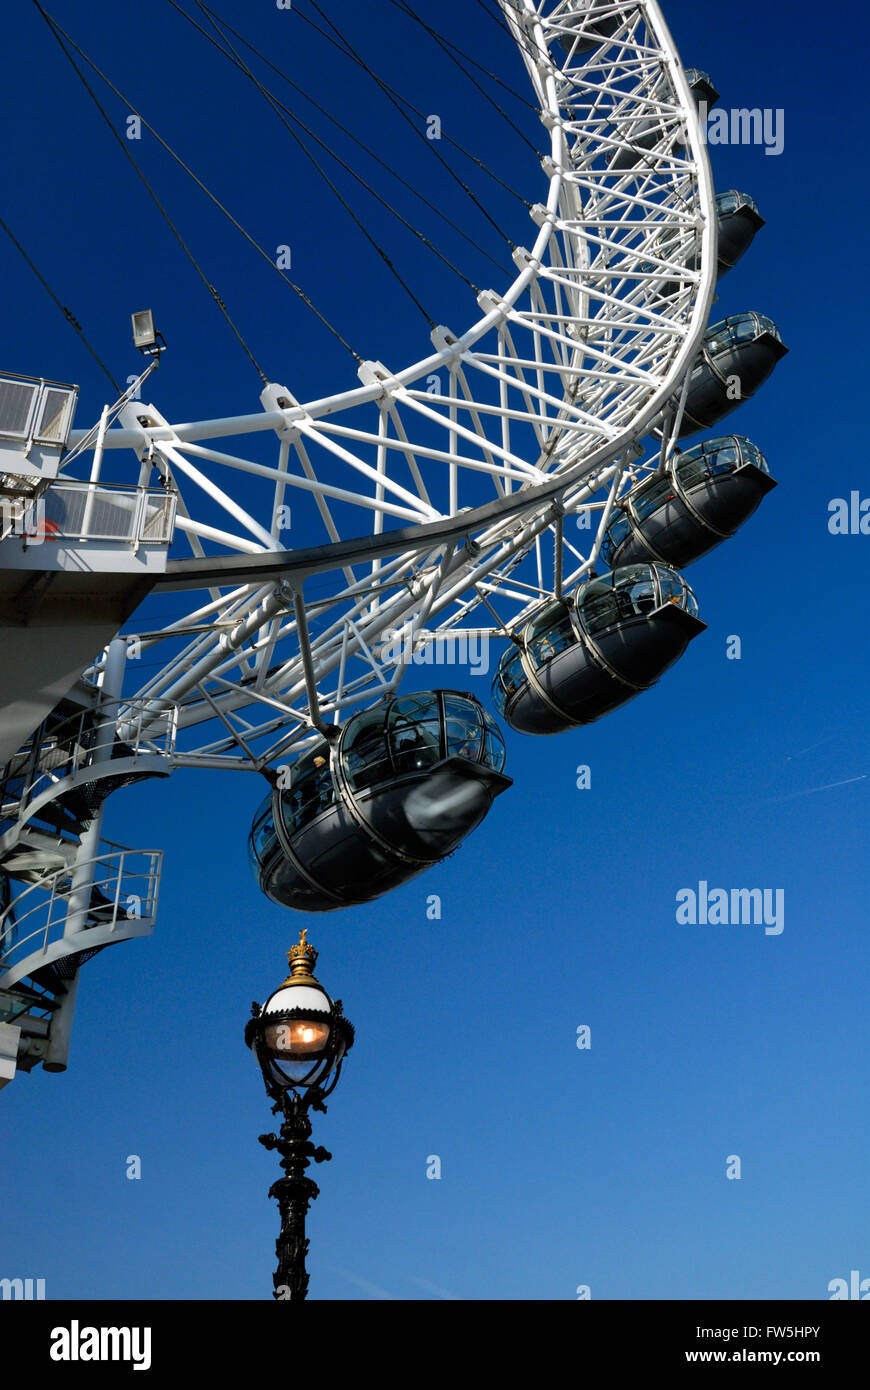 El London Eye, la Millenium Wheel, con tradicional farola, cerca del Royal Festival Hall, del RFH, sala de conciertos, a lo largo del Thames embankment, South Bank, Southbank Foto de stock